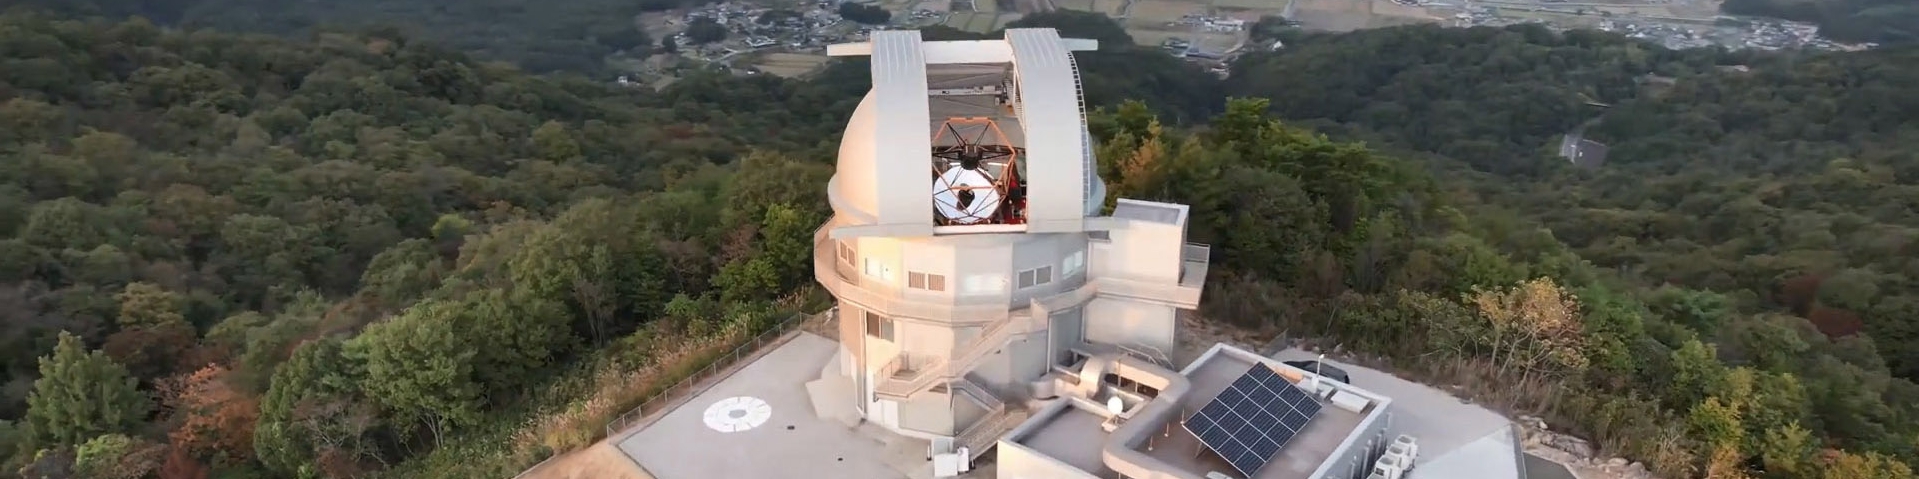 上空から見た岡山天文台